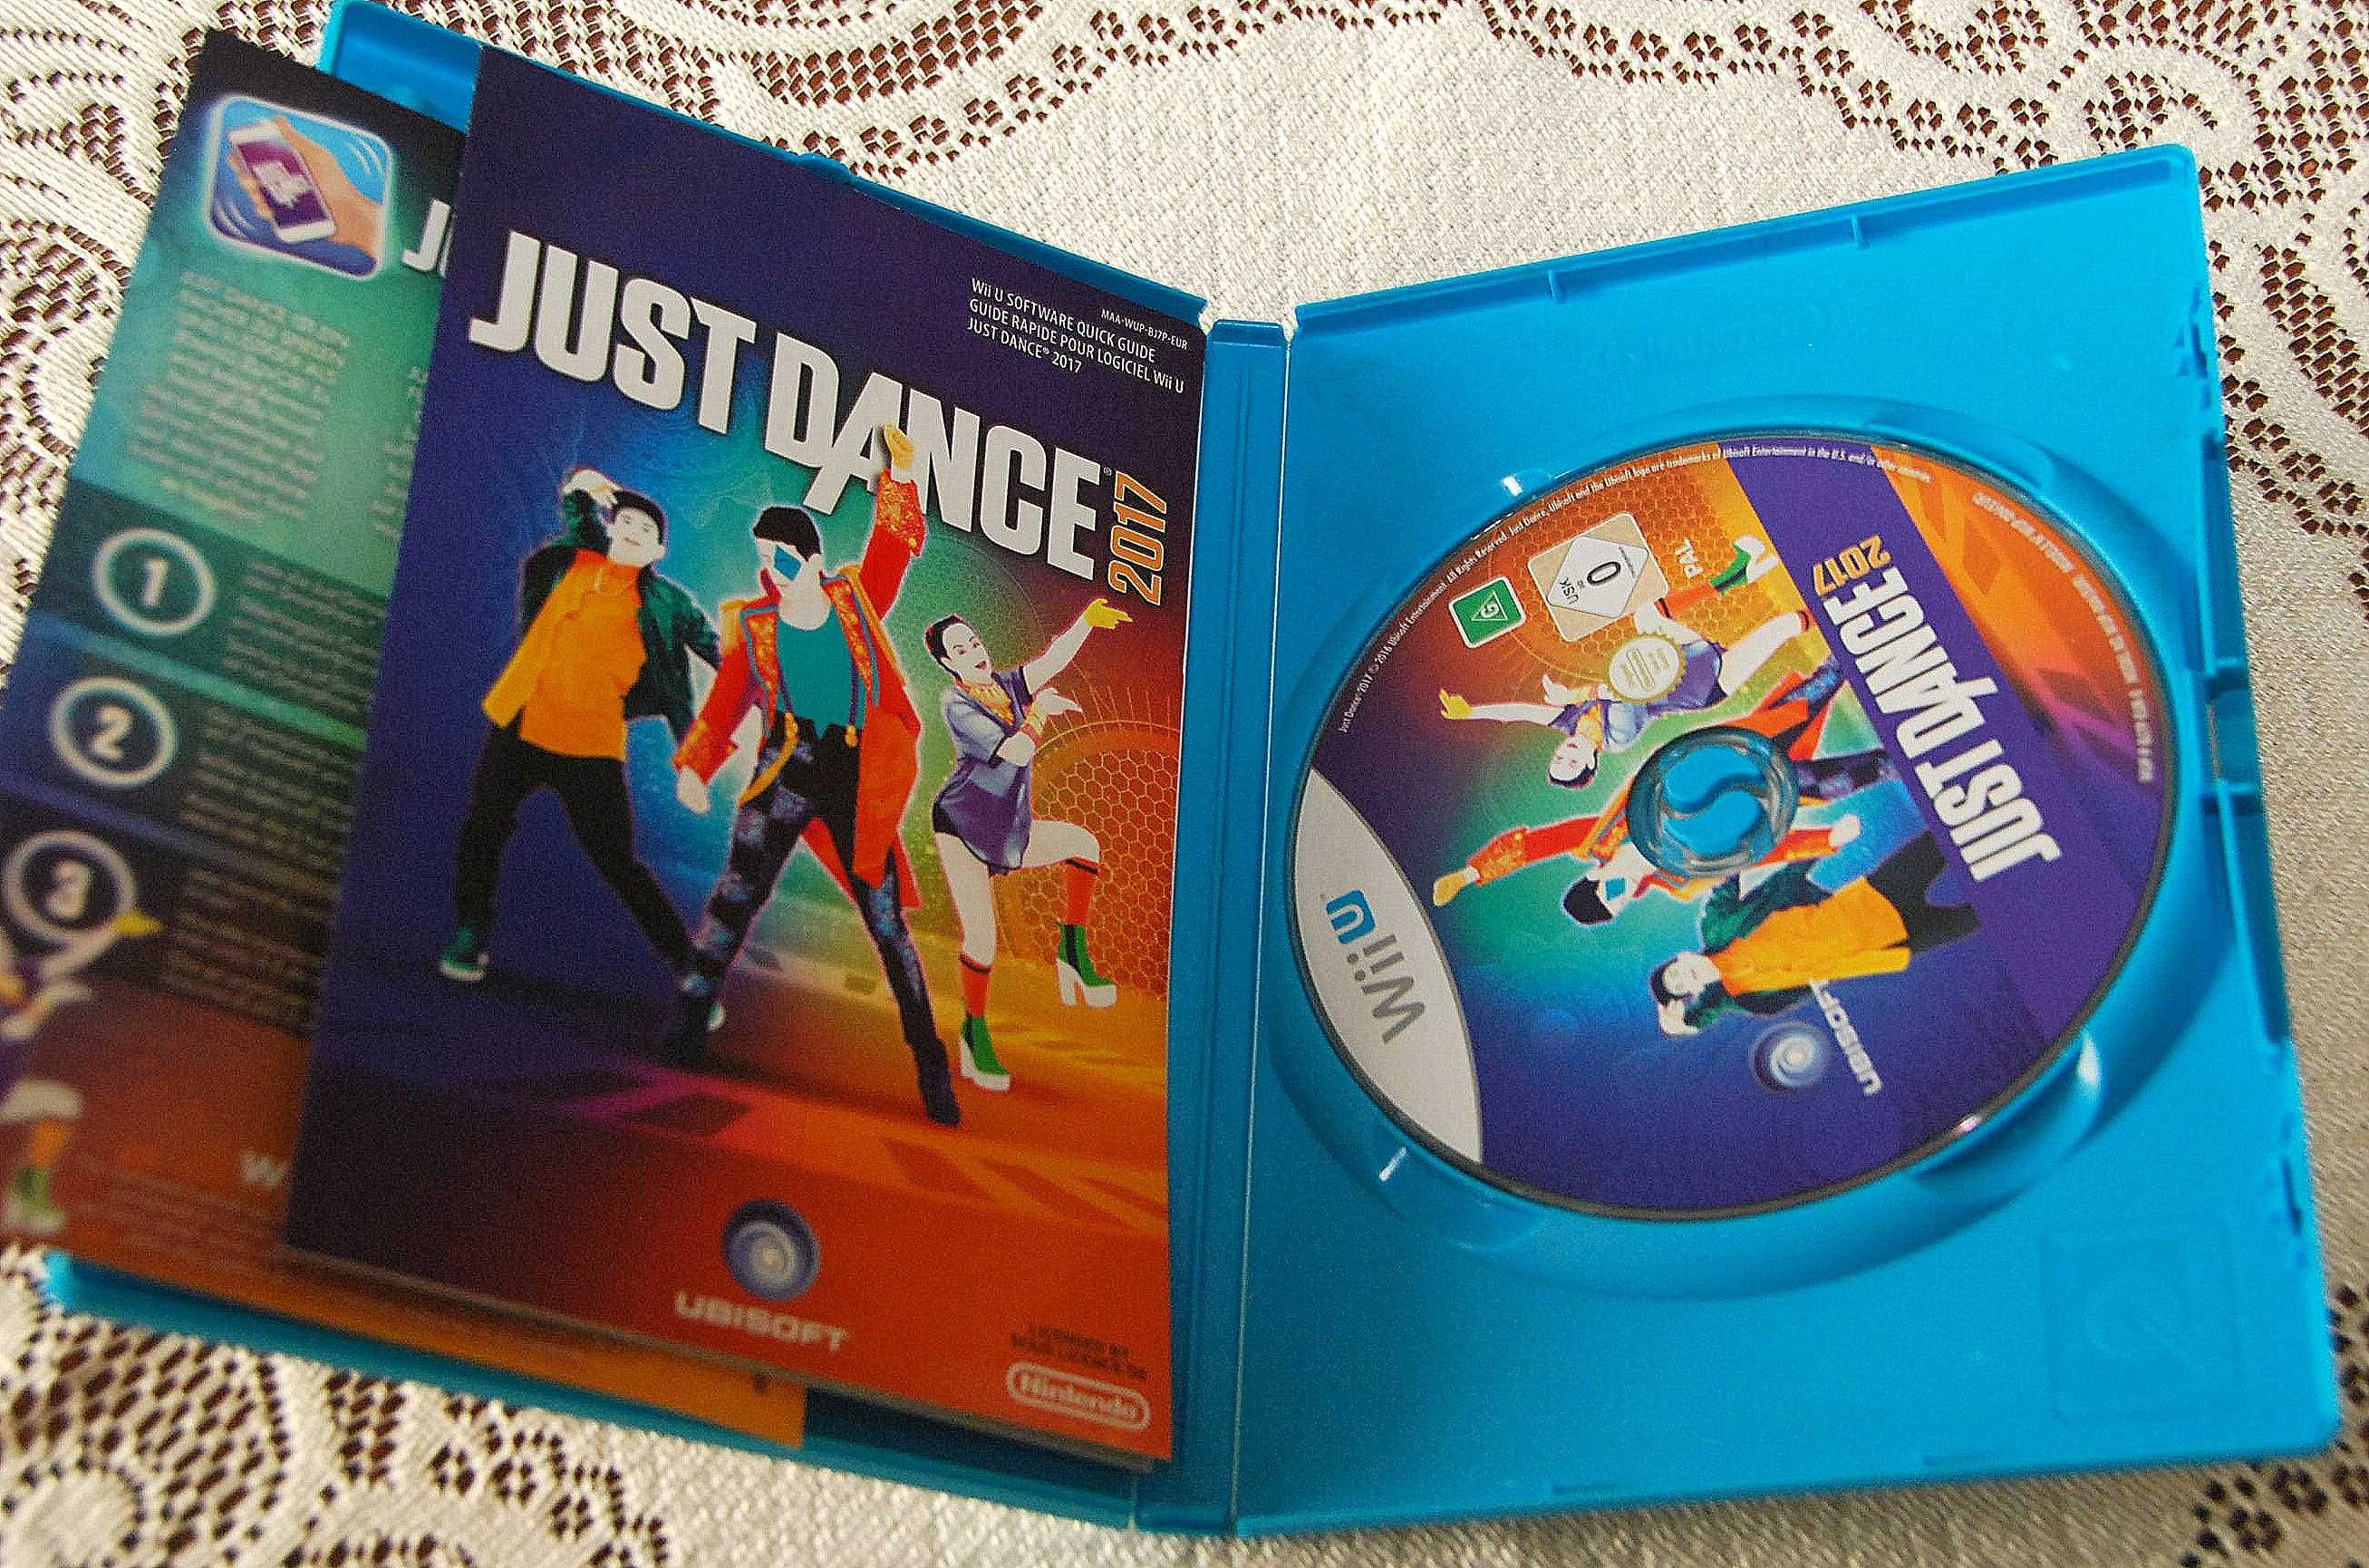 Wii Just Dance 2017 Nintendo Wii U